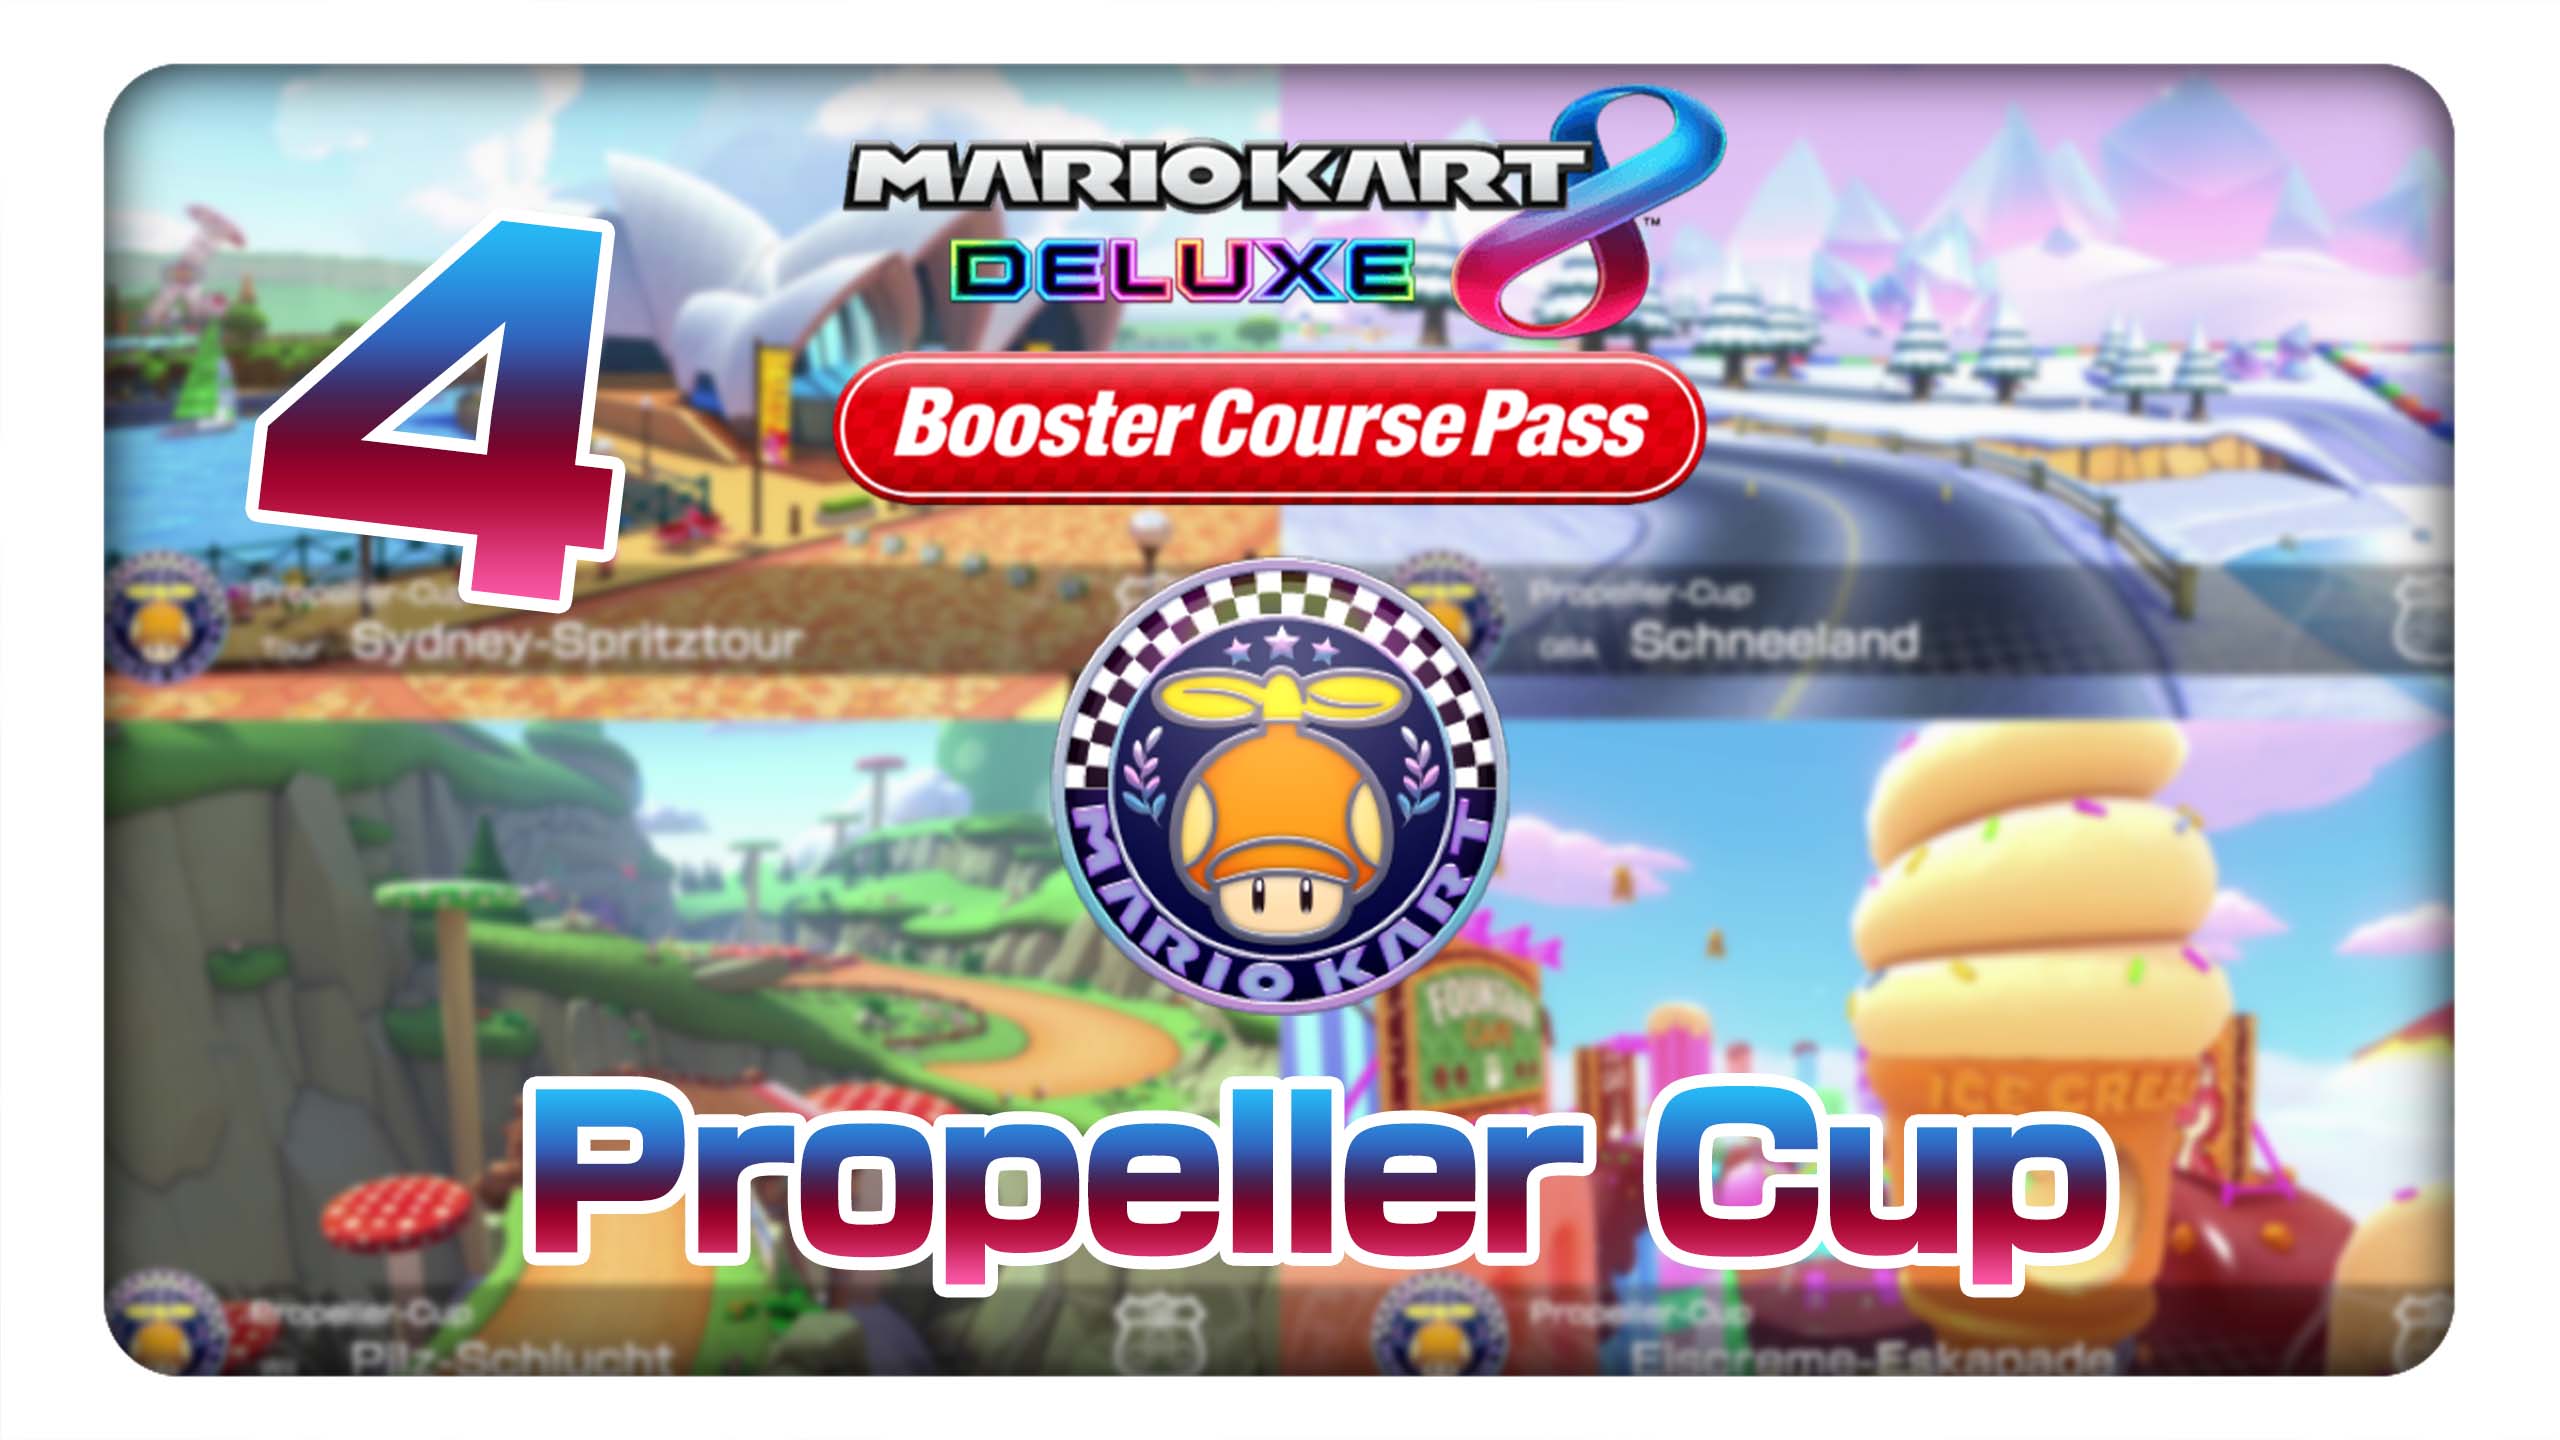 Mario Kart 8 Deluxe Boosterstrecken-Pass #4: Propeller-Cup